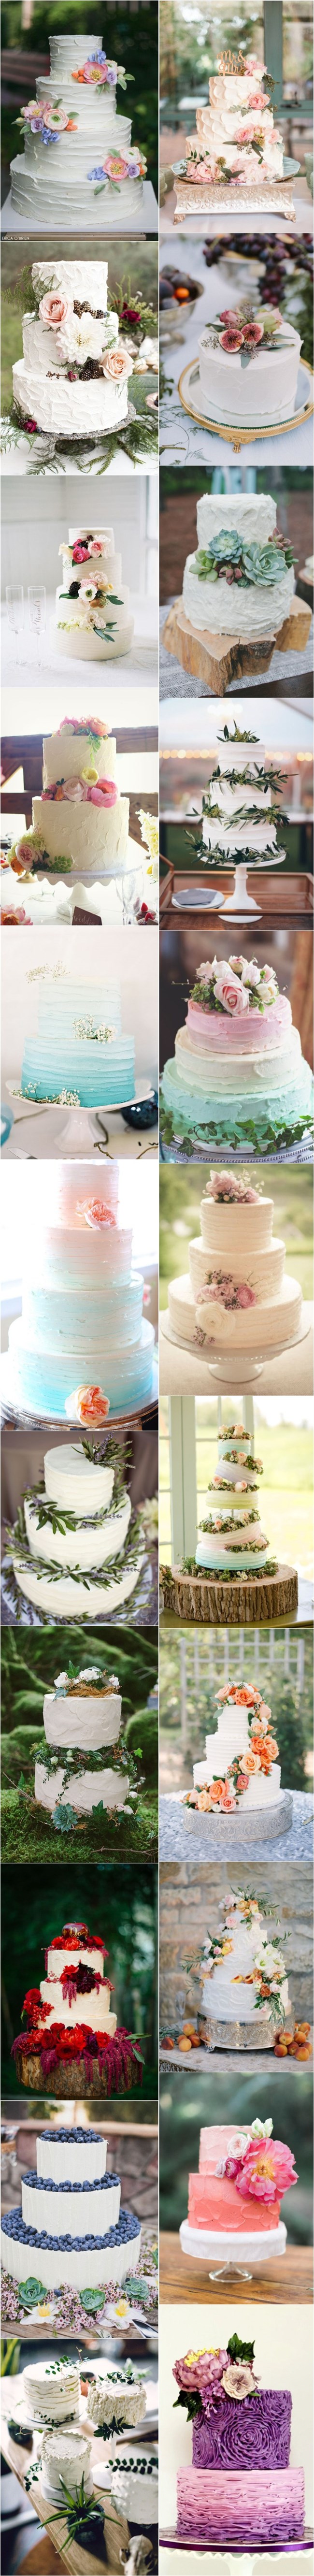 22 unique buttercream wedding cakes